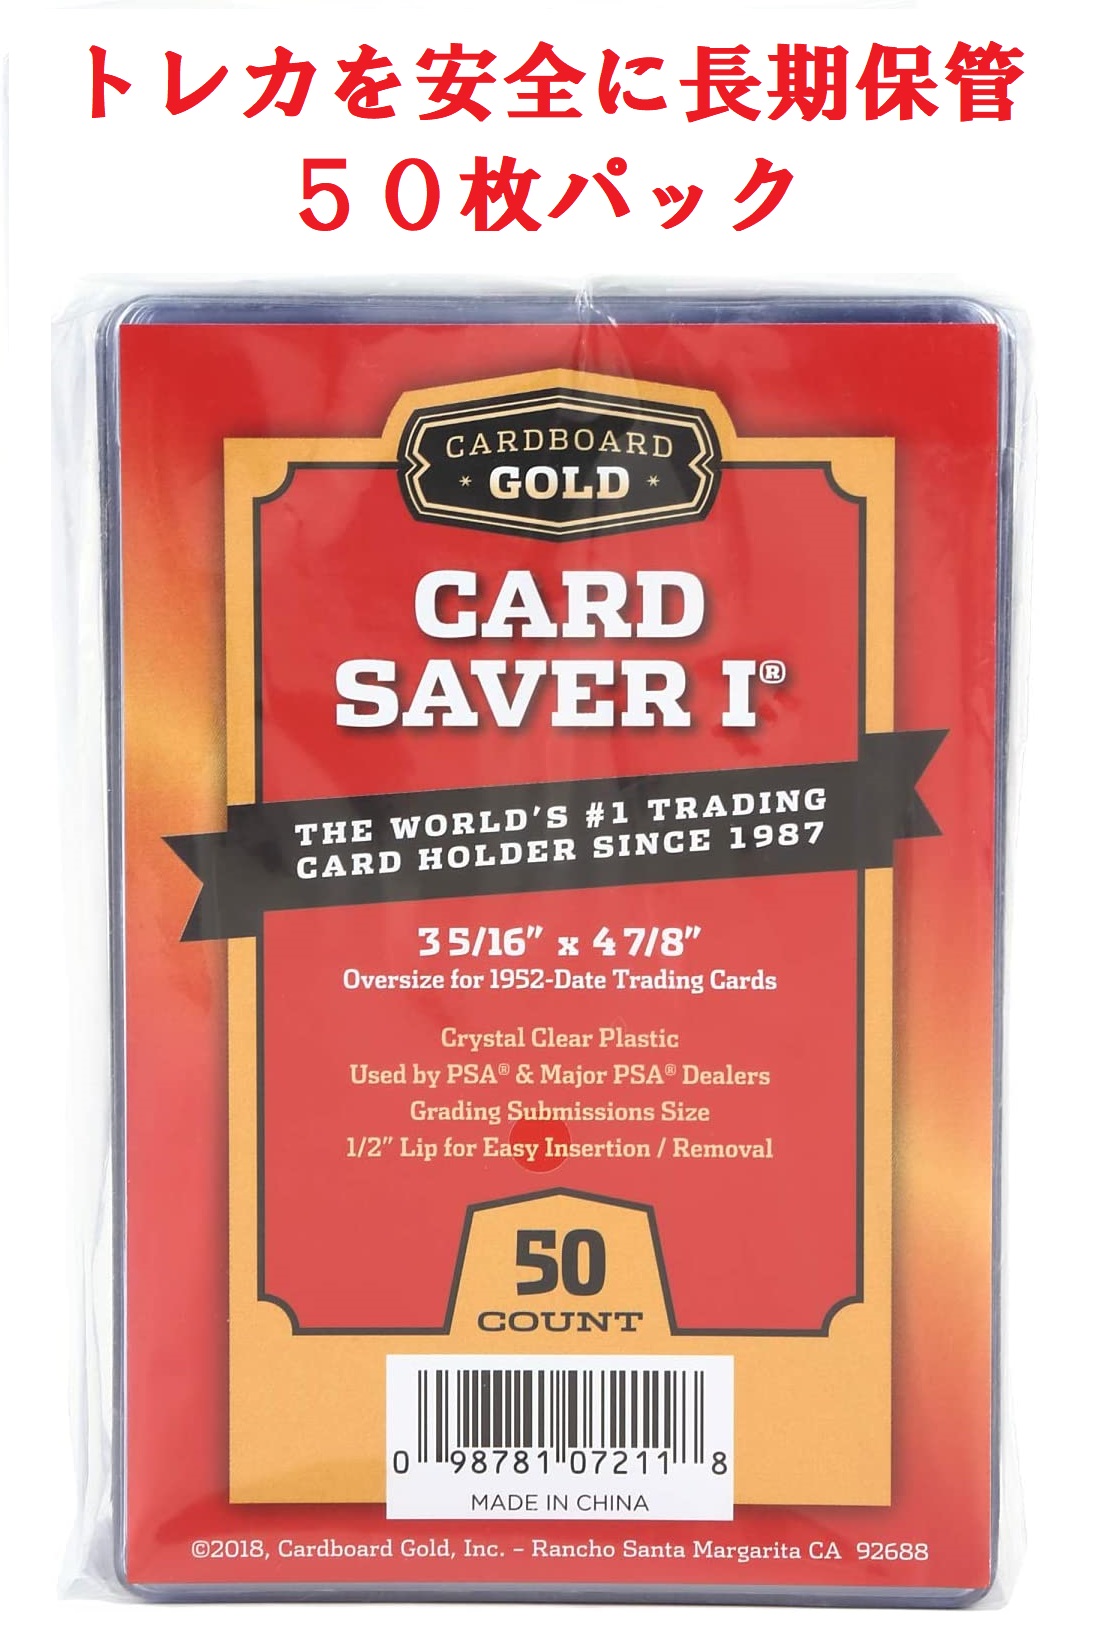 カードセーバー1 セミリジッド カードホルダー【安心保証】PSA/BGSグレードカード提出用 50枚パック トレーディングカード保管 半硬質 透明  Cardboard Gold Card Saver 1 | ハクライ雑貨